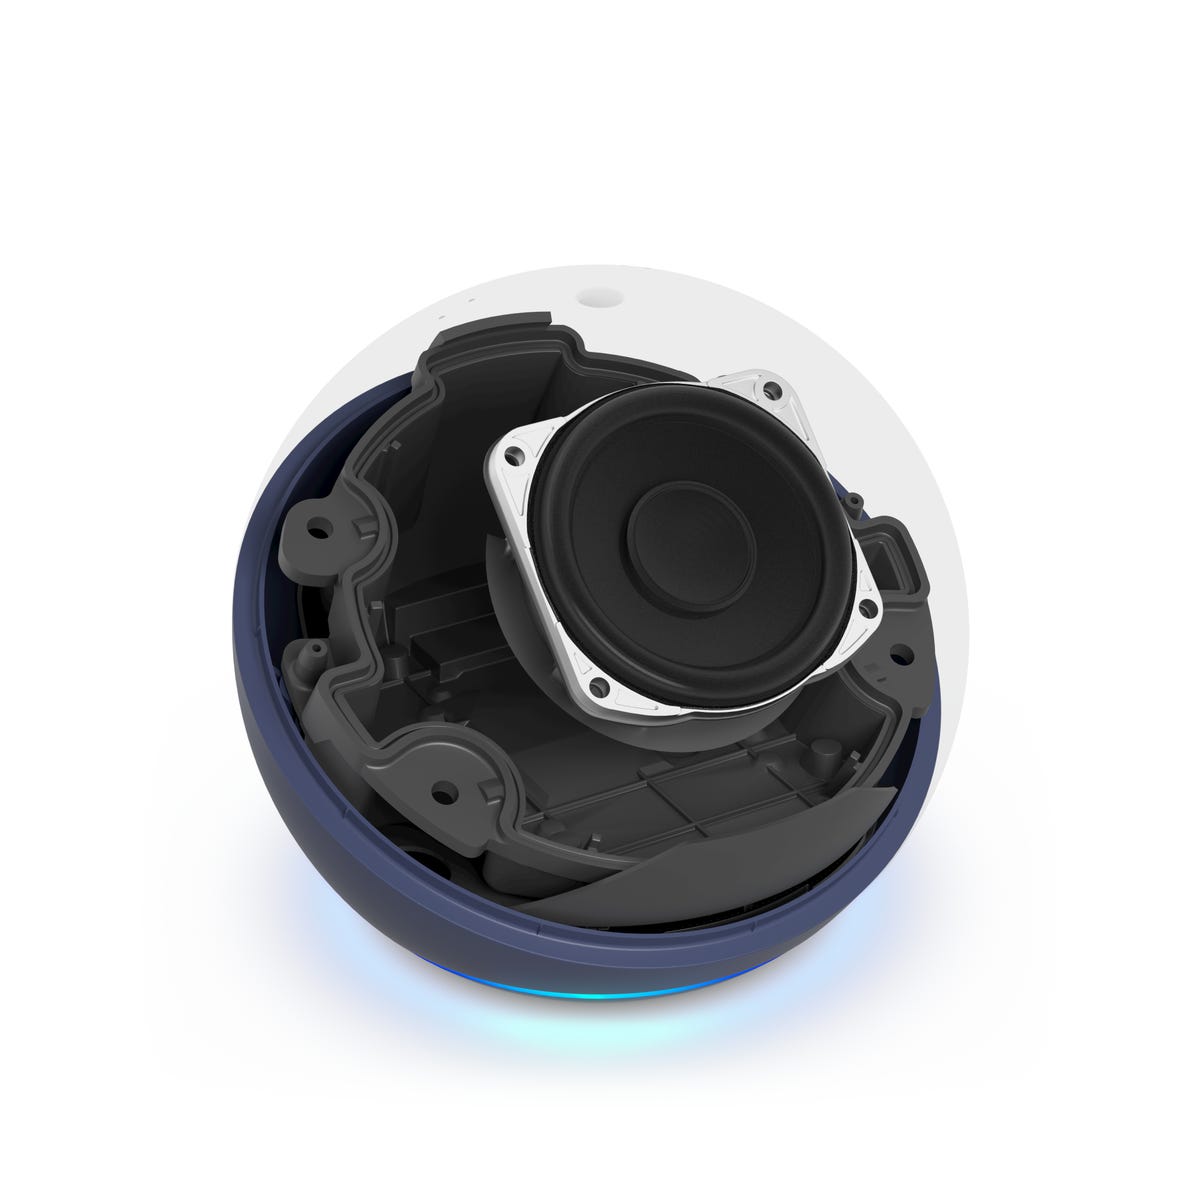 يُظهر نموذج بالحجم الطبيعي الأعمال الداخلية لمكبر الصوت Echo Dot الذكي من الجيل الخامس ، والذي يتميز بجهير أفضل بفضل تصميم جديد عالي الرحلة.